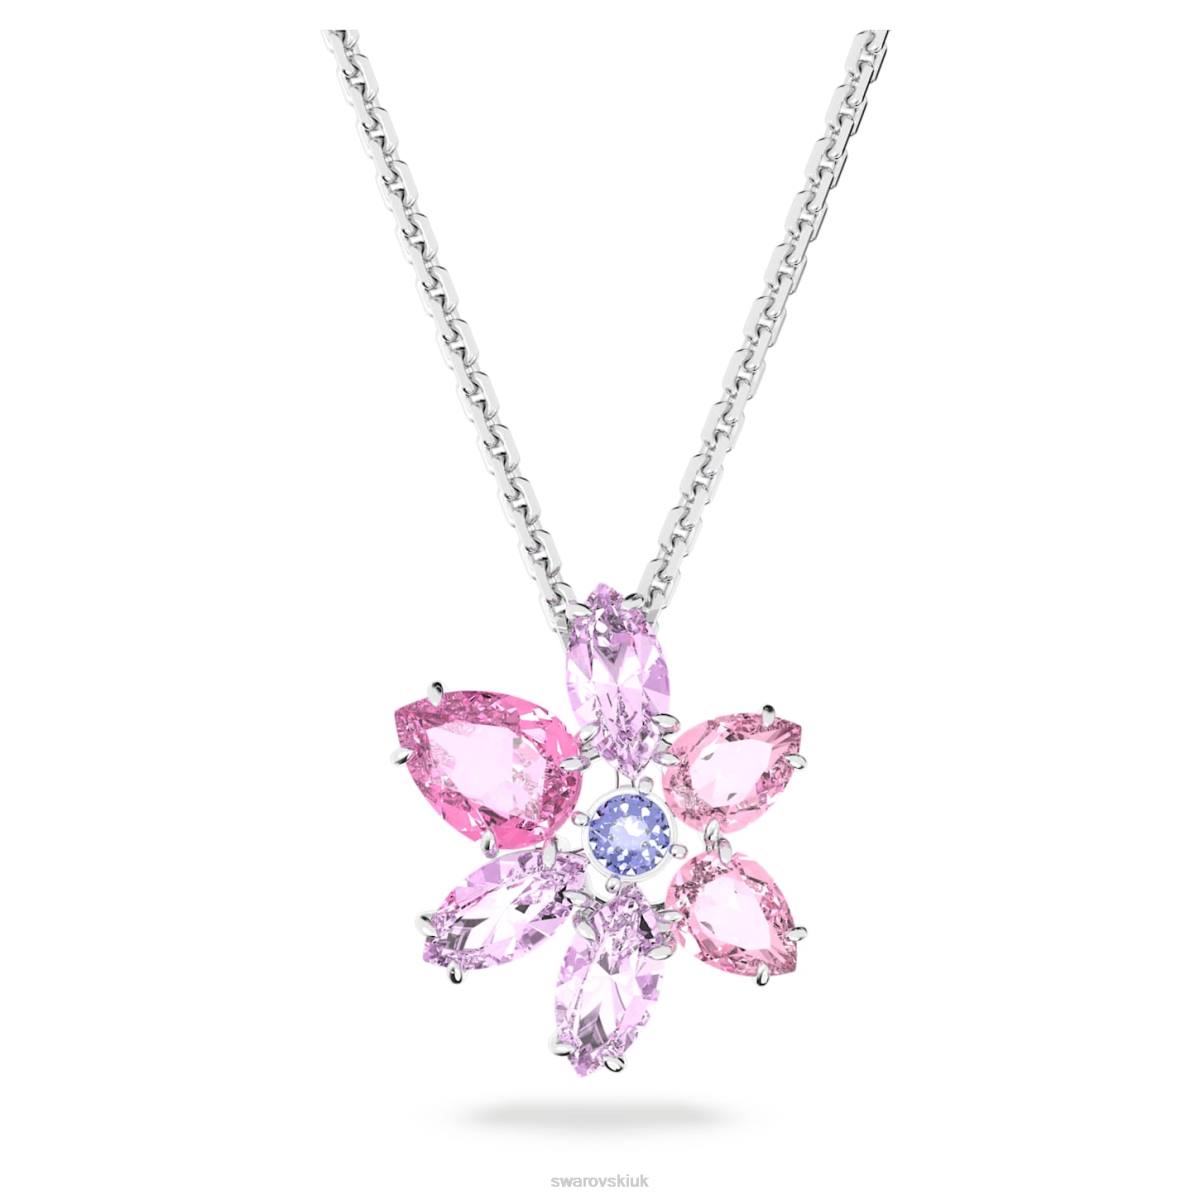 Jewelry Swarovski Gema pendant Mixed cuts, Flower, Pink, Rhodium plated 48JX161